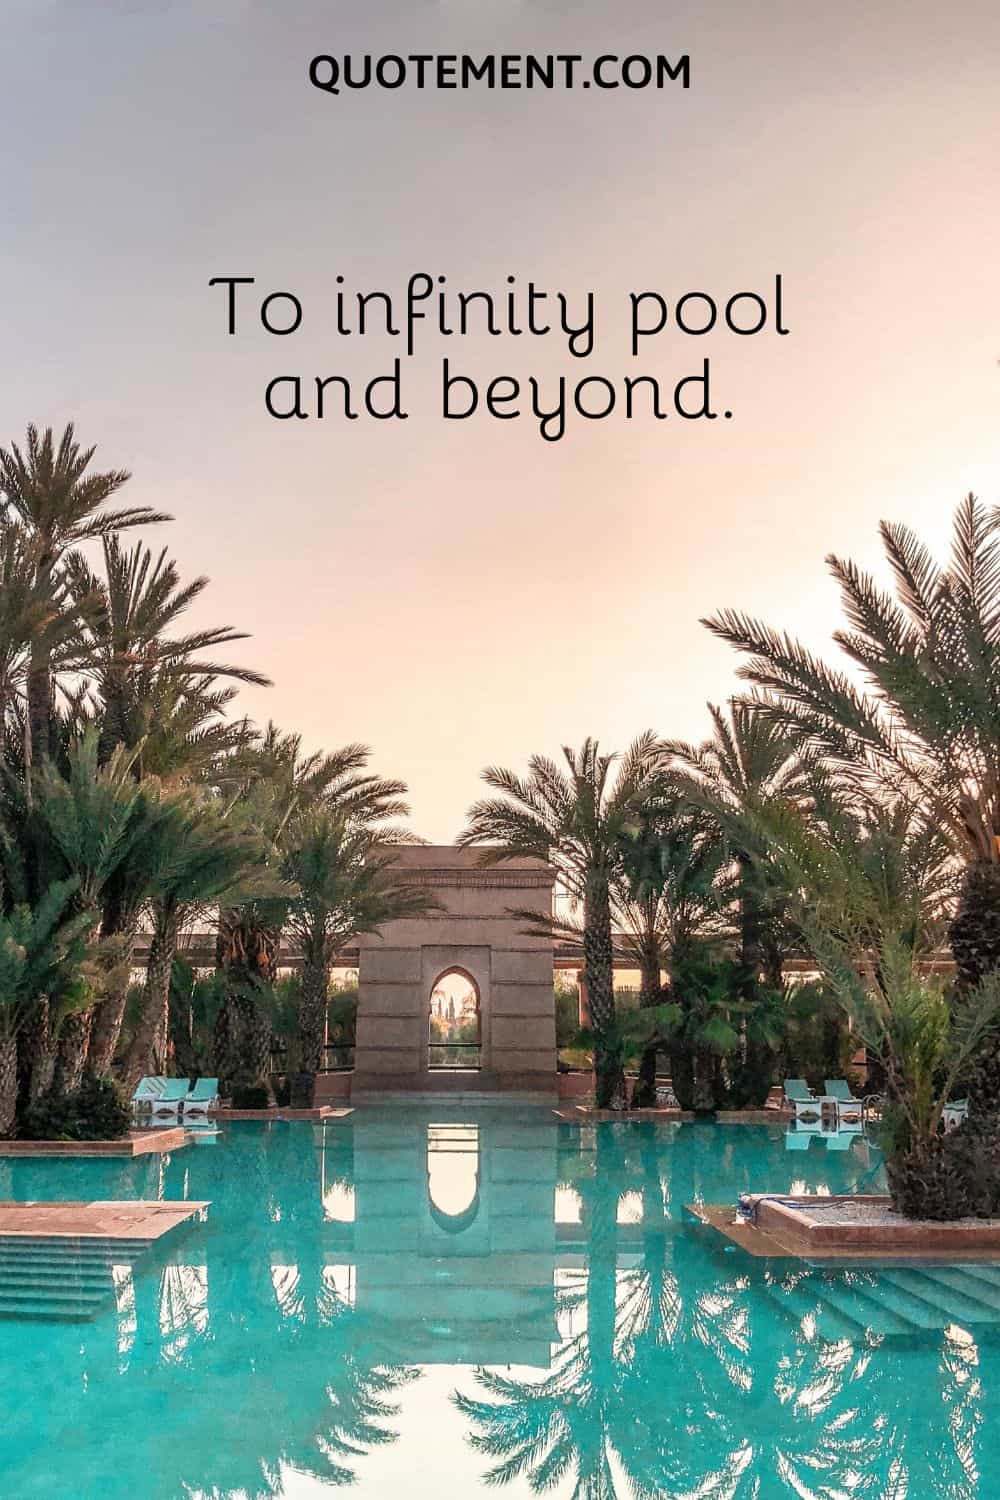 To infinity pool and beyond.